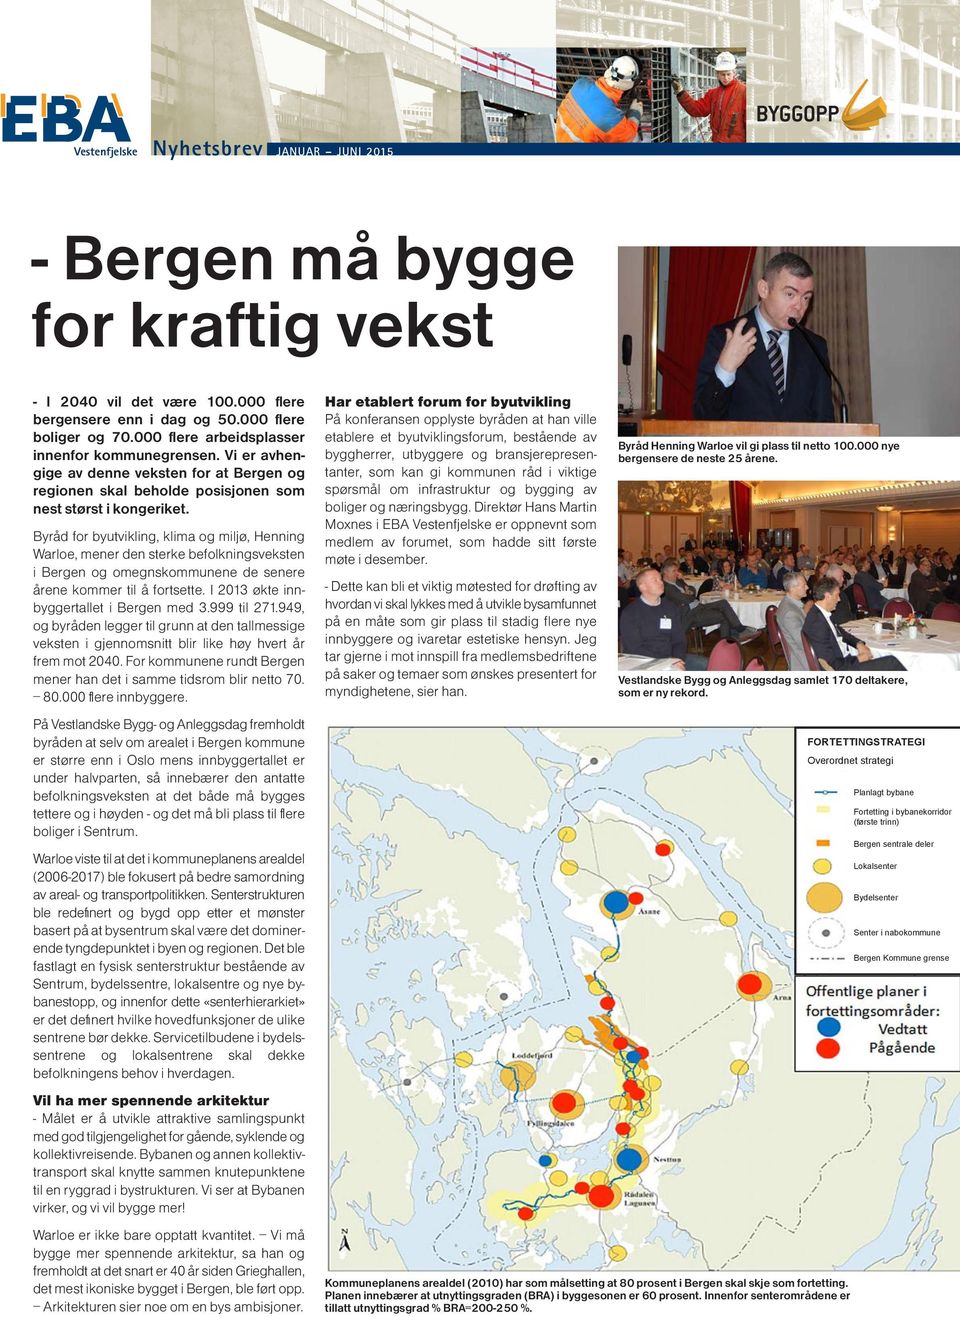 Byråd for byutvikling, klima og miljø, Henning Warloe, mener den sterke befolkningsveksten i Bergen og omegnskommunene de senere årene kommer til å fortsette.